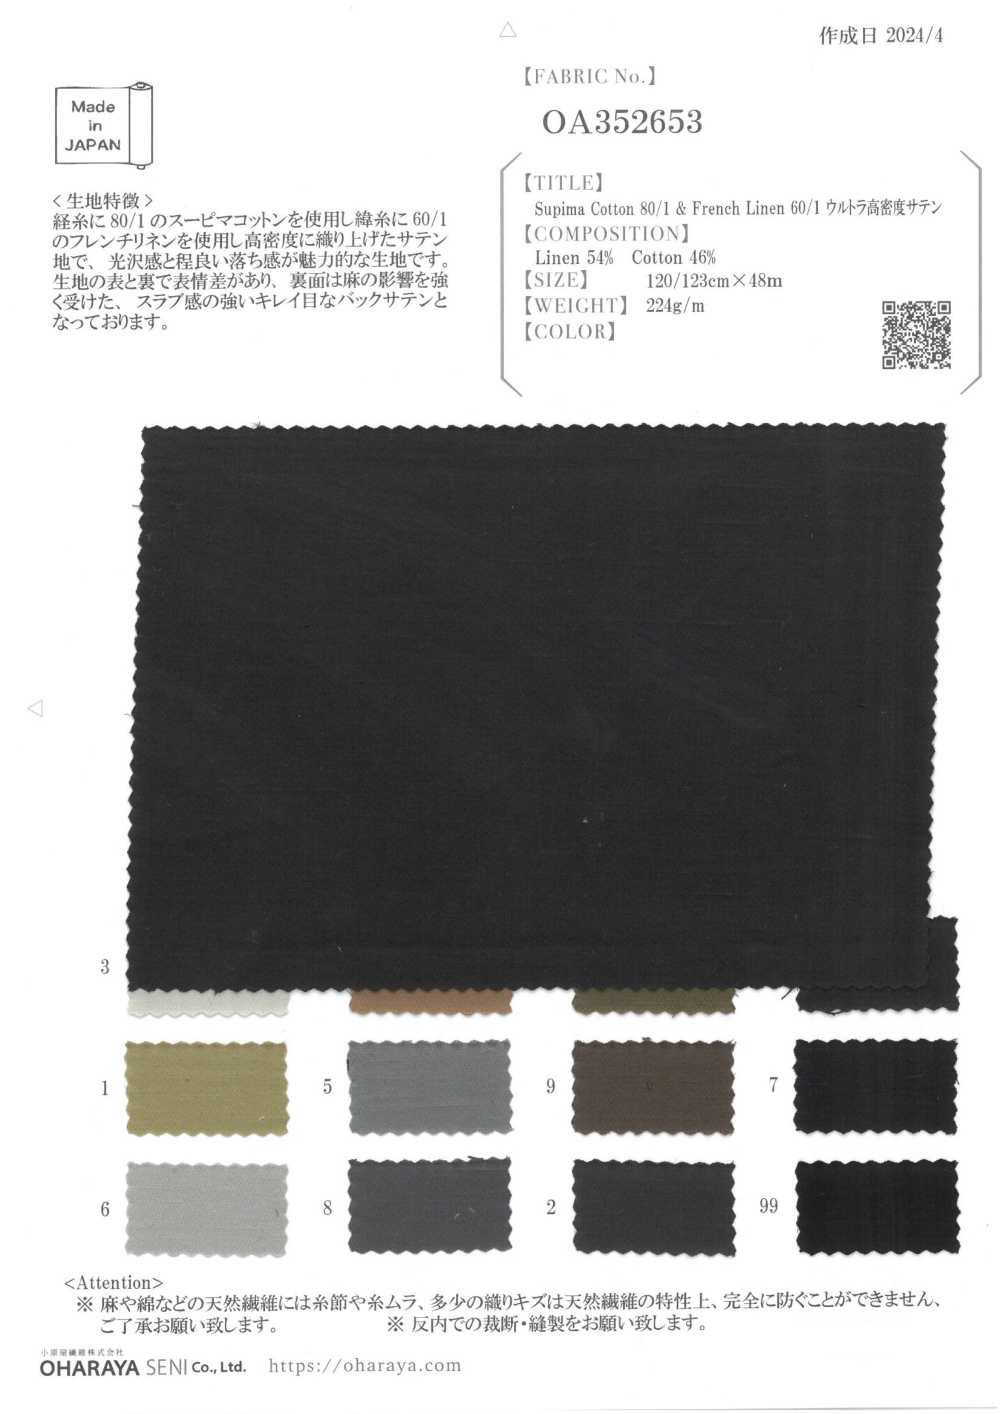 OA352653 苏比马棉 80/1 和法国亚麻 60/1 超密缎纹[面料] 小原屋繊維